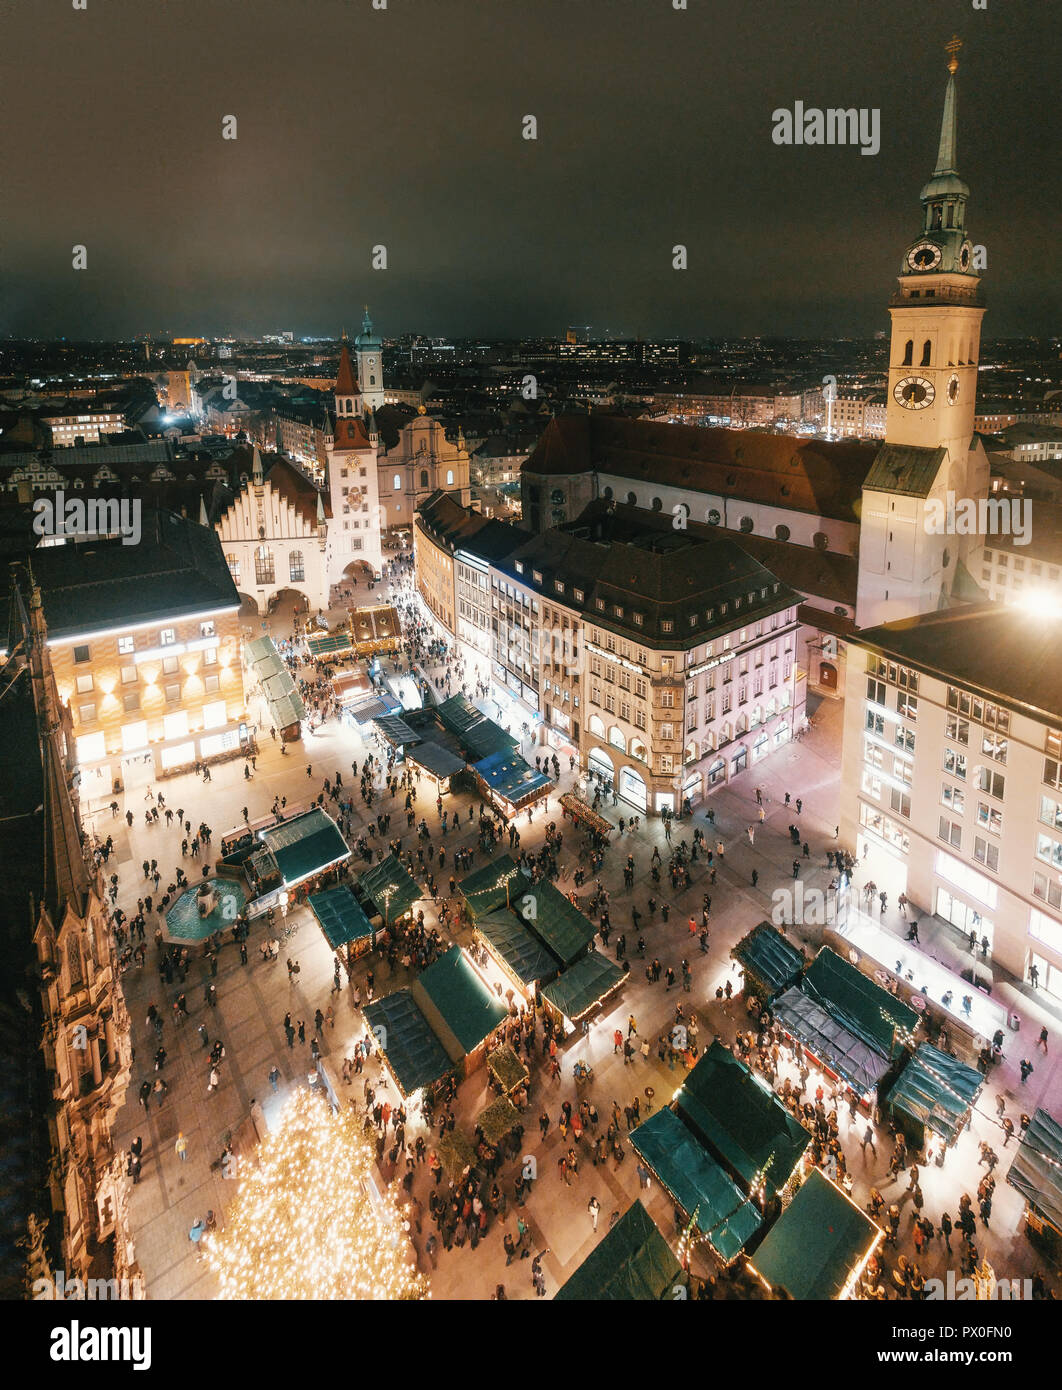 Weihnachten Panorama vom Marienplatz aus Neues Rathaus Rathaus bei Nacht, München, Bayern, Deutschland. Stockfoto